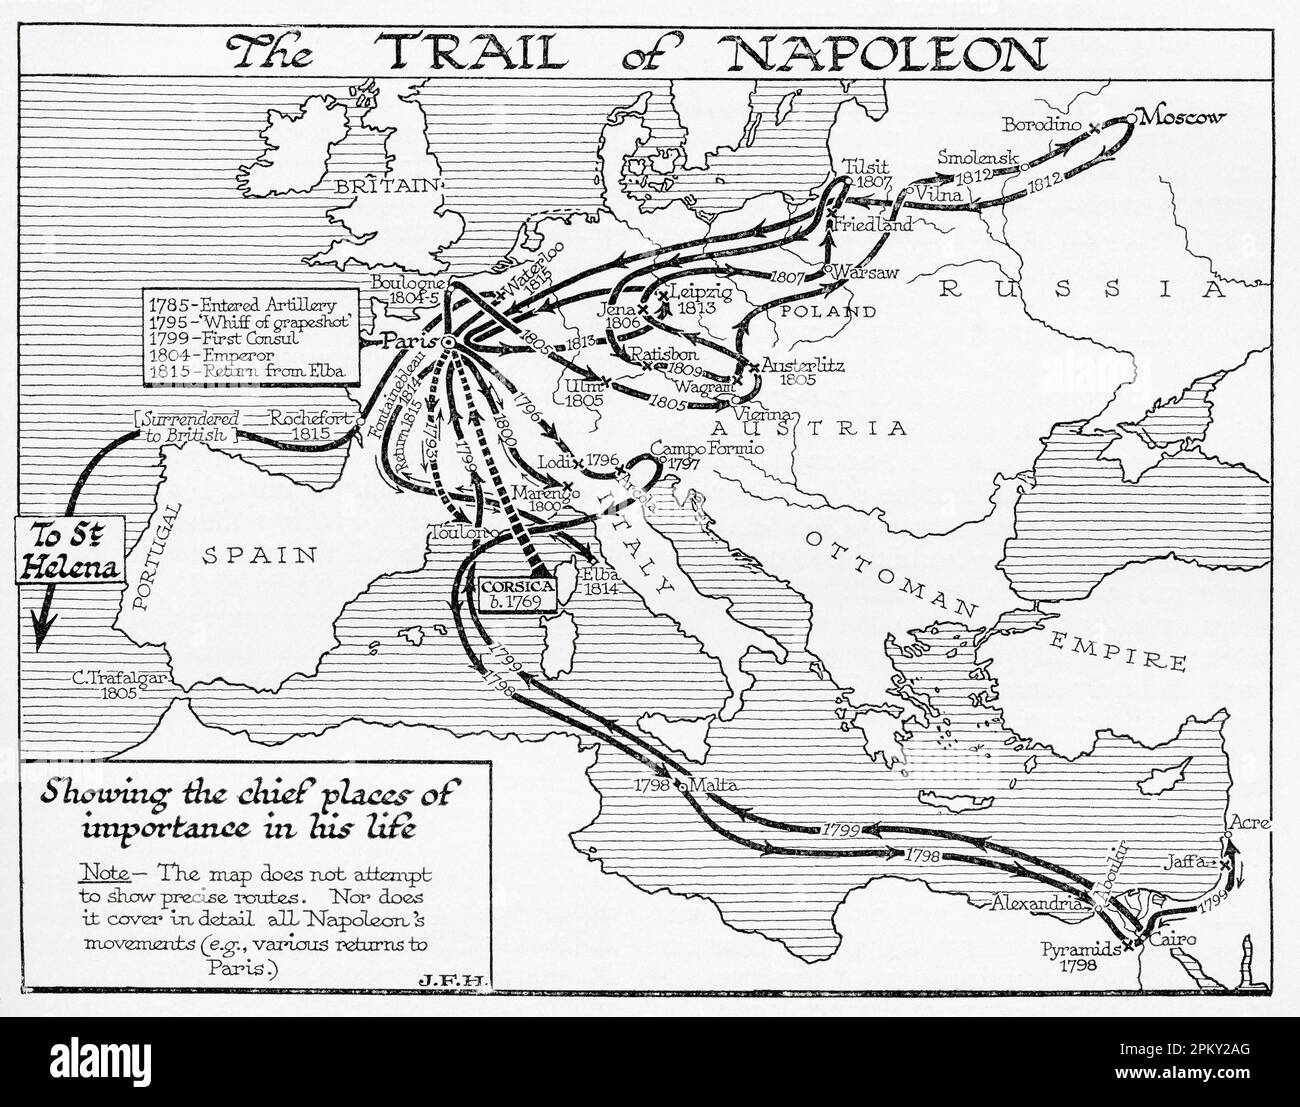 Mappa che mostra il sentiero di Napoleone, 1785-1815. Dal libro Outline of History di H.G. Wells, pubblicato nel 1920. Foto Stock